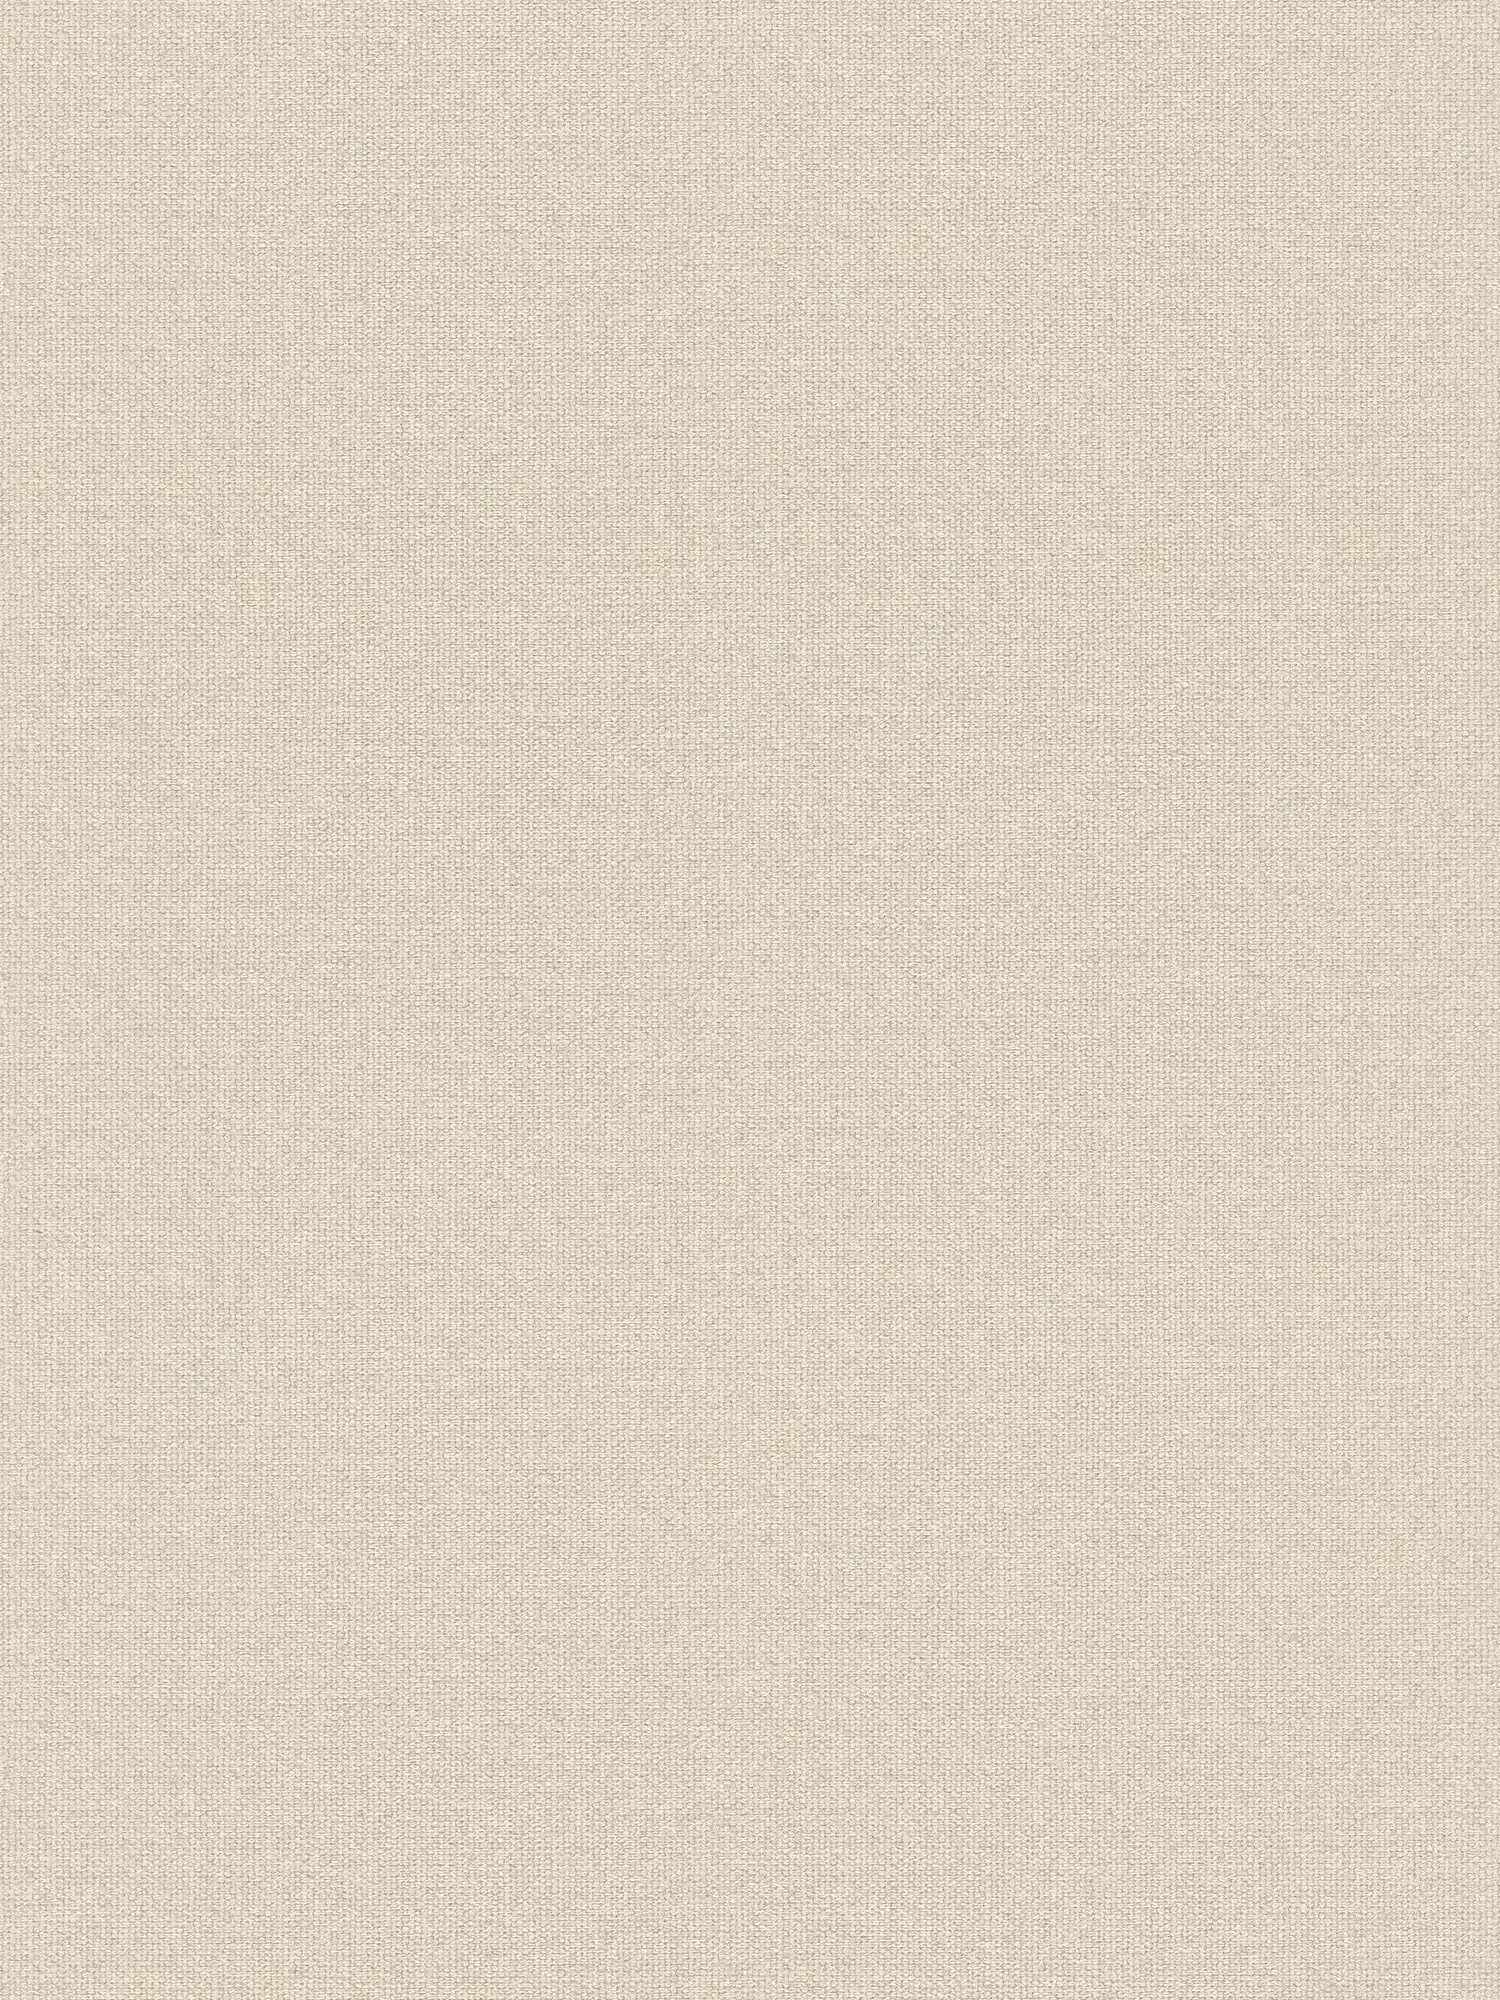 Papier peint intissé imitation lin avec détails structurés, uni - crème, beige
